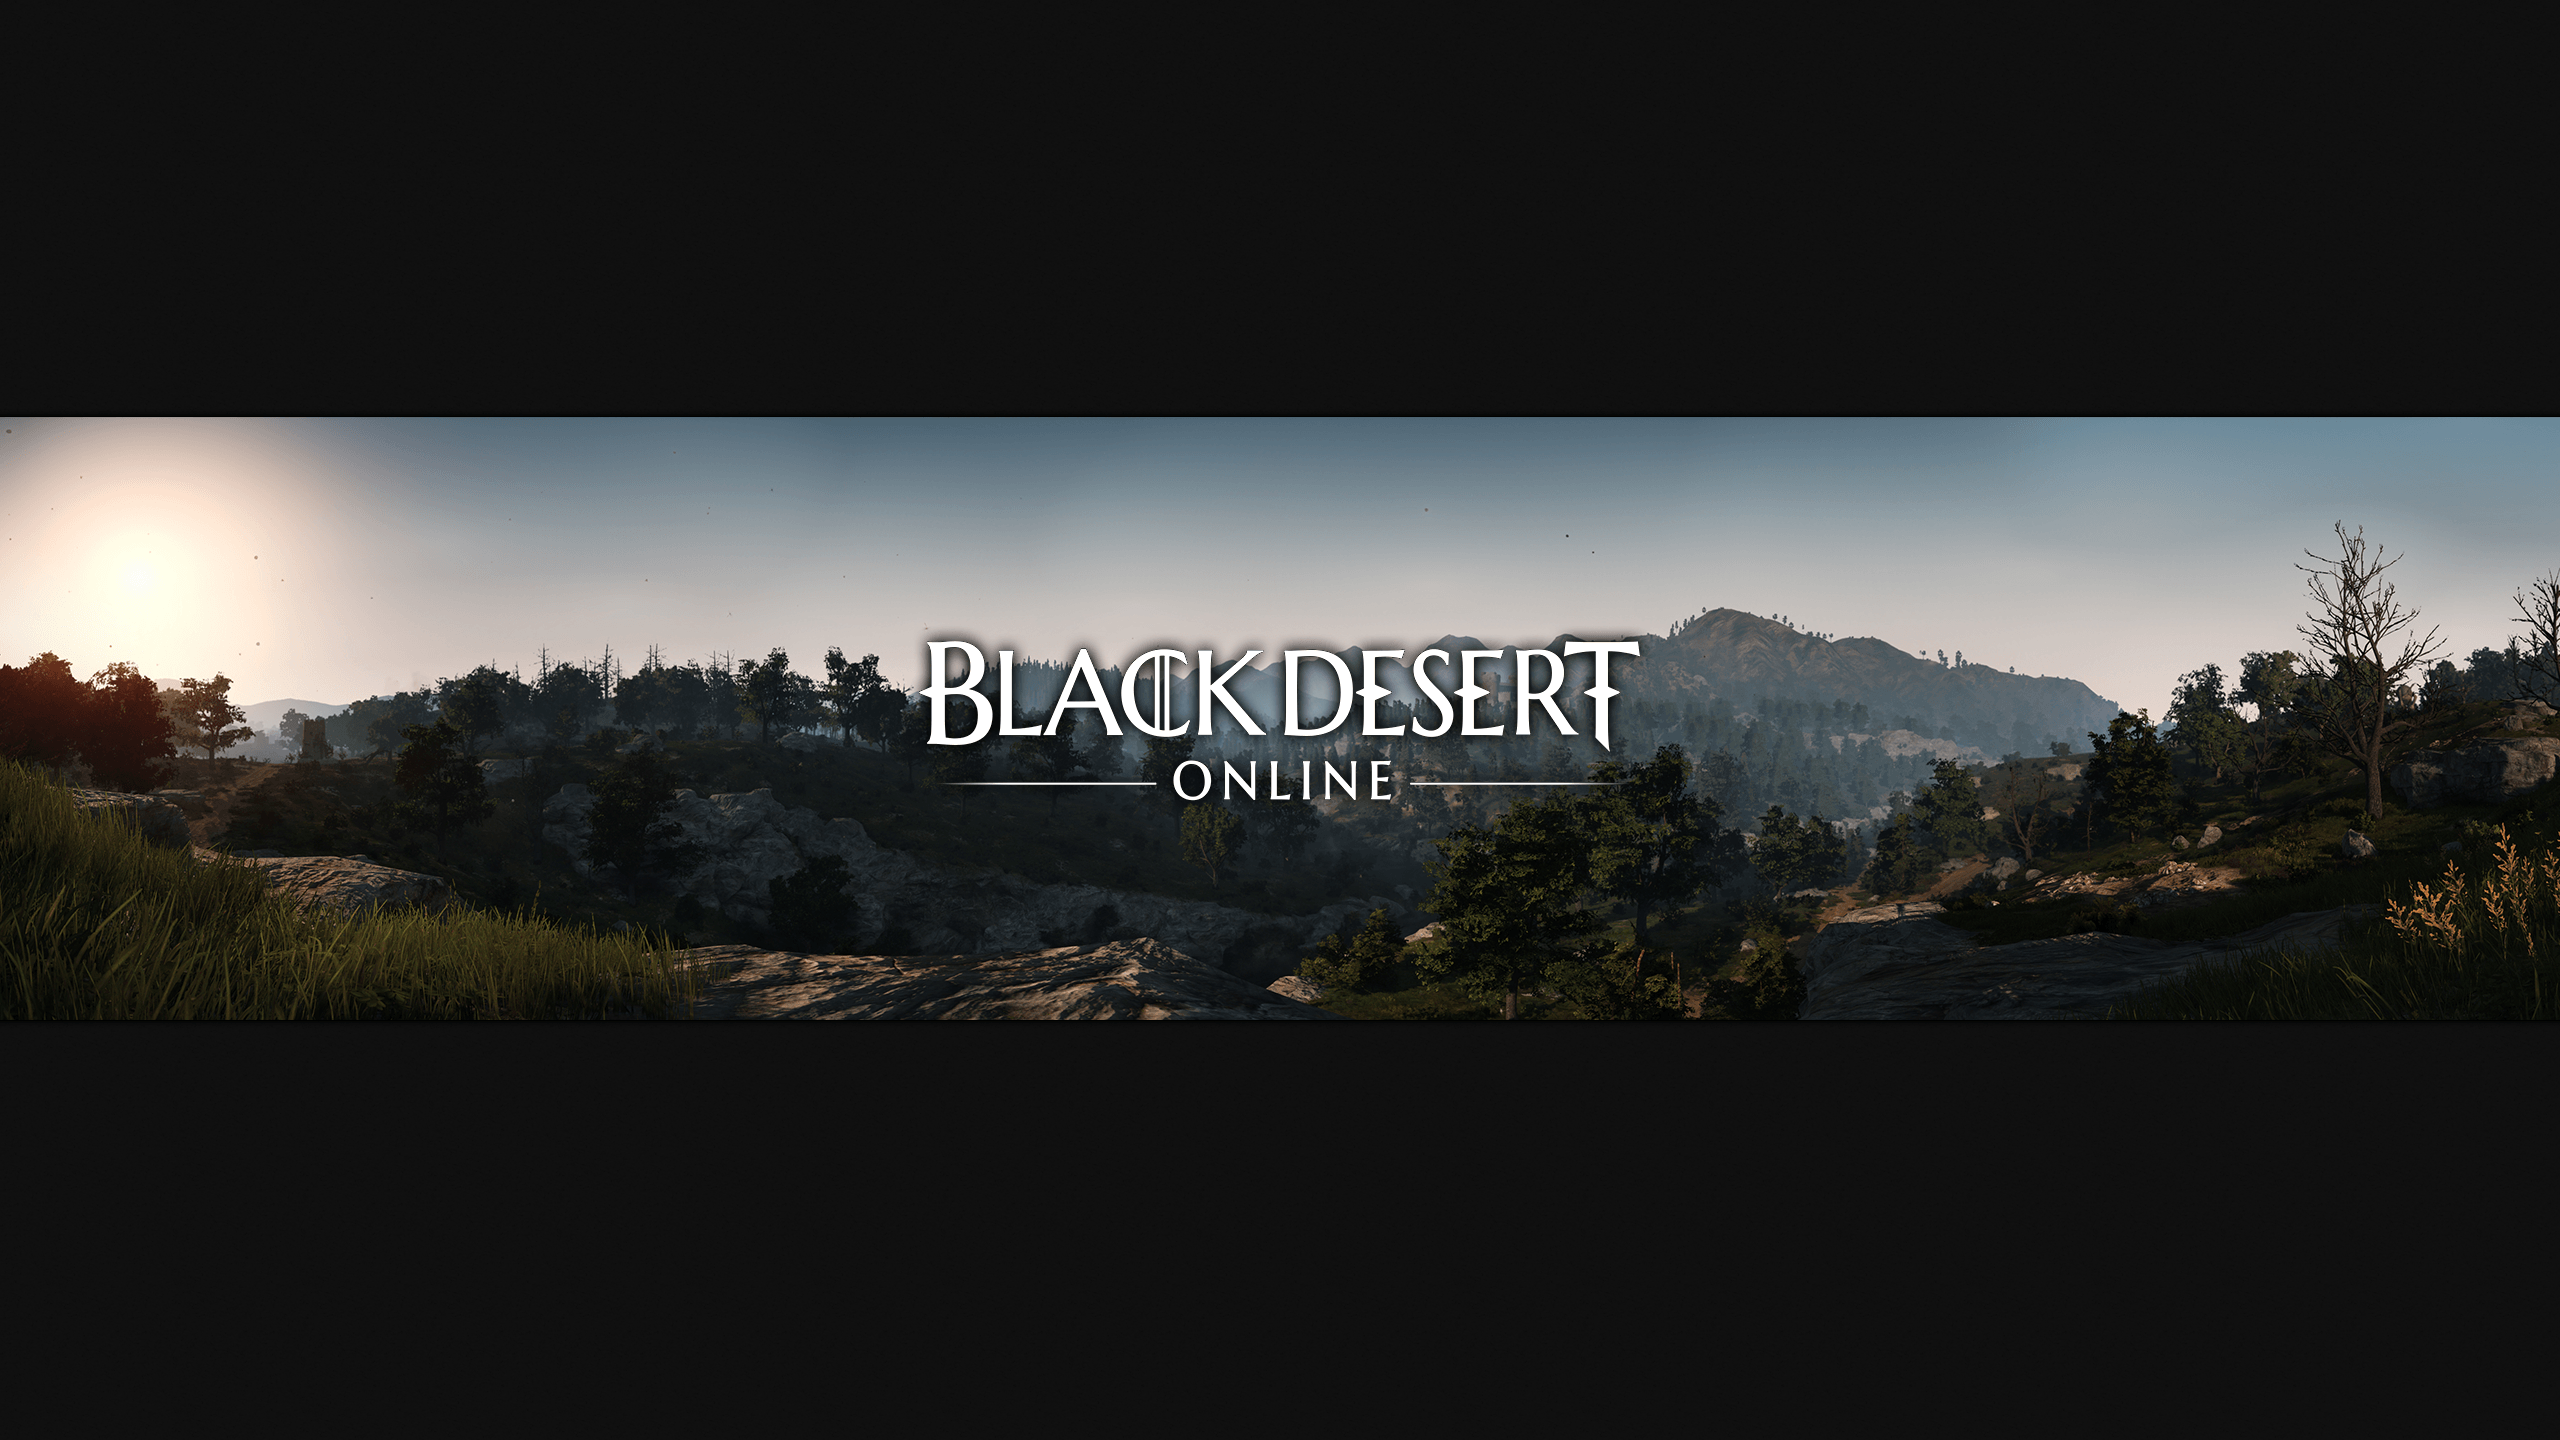 Black Desert Online Wallpaper